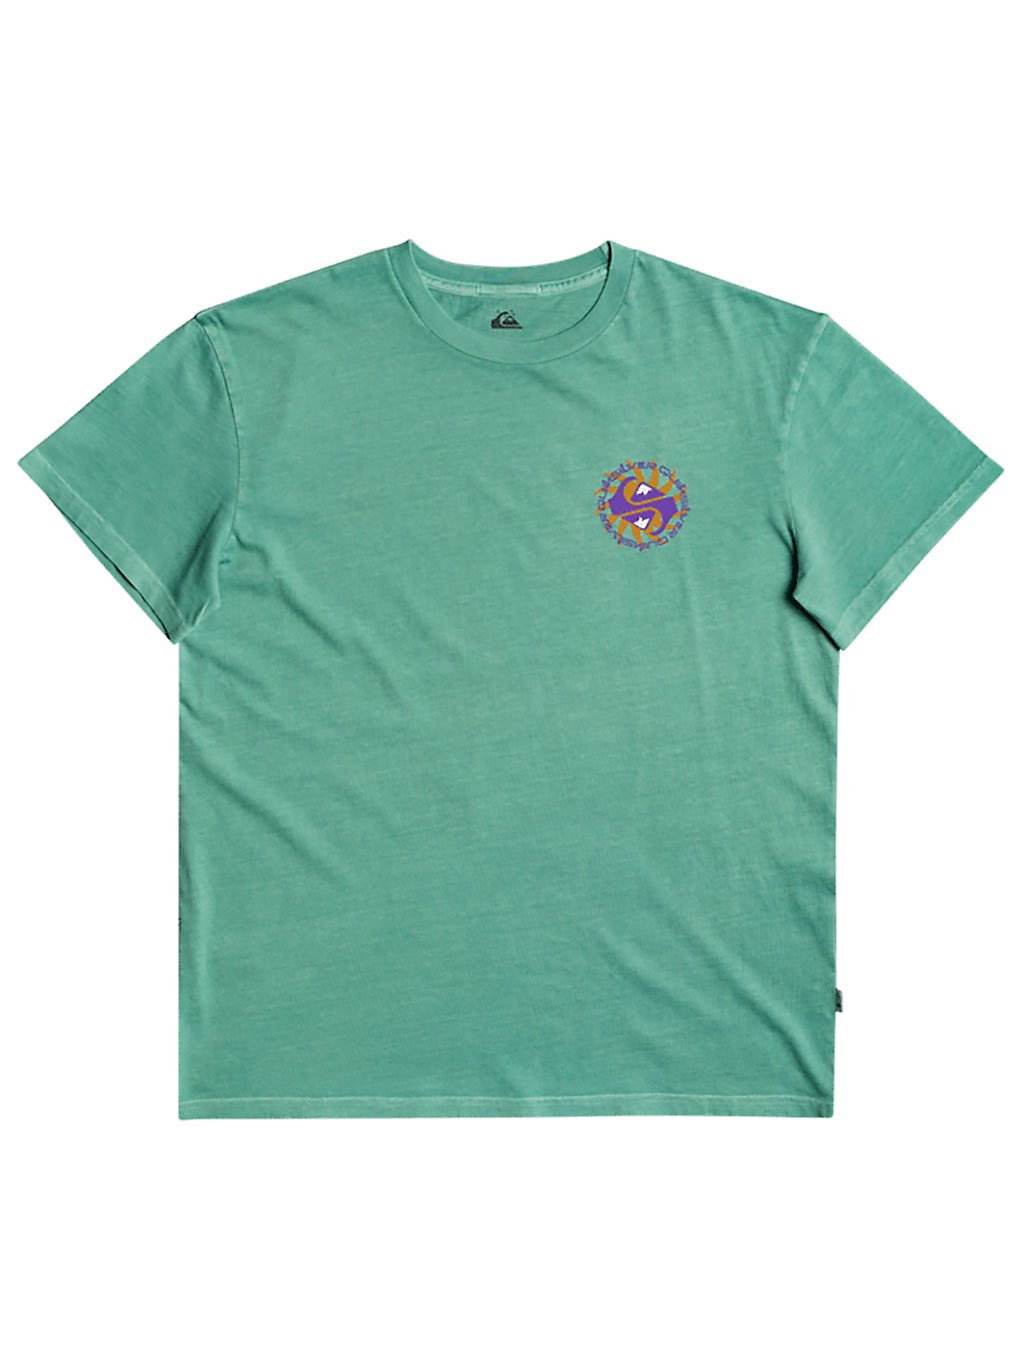 Quiksilver OG Spiral T-Shirt marine green